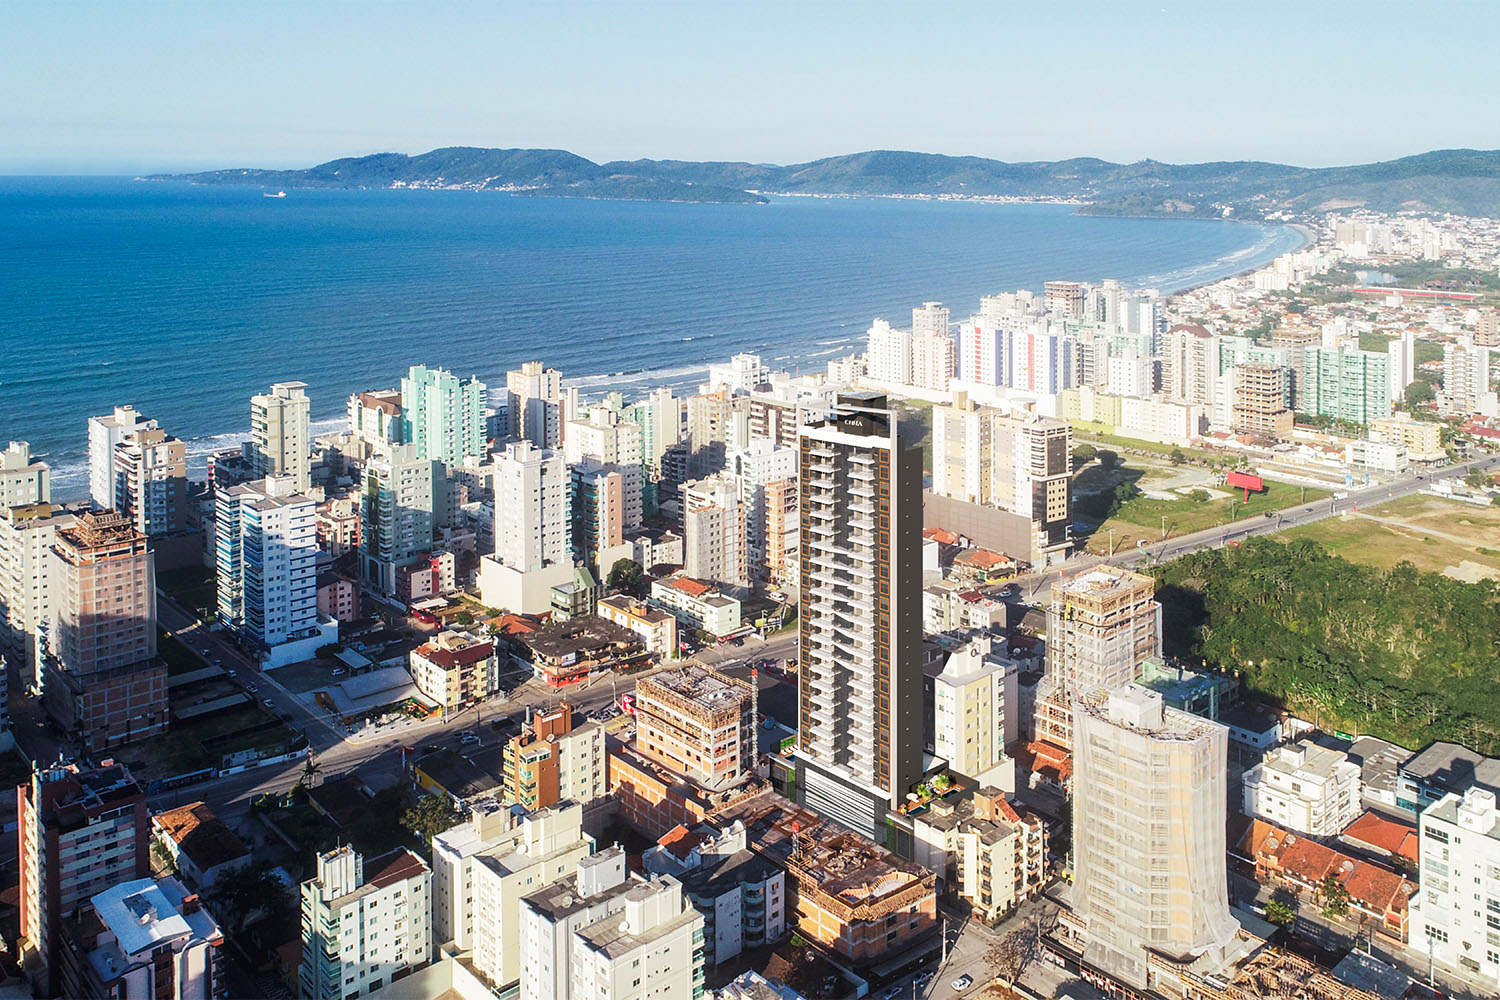 Foto aérea da Cidade de Itapema, mostrando seus empreendimentos imobiliários, urbanização e imóveis